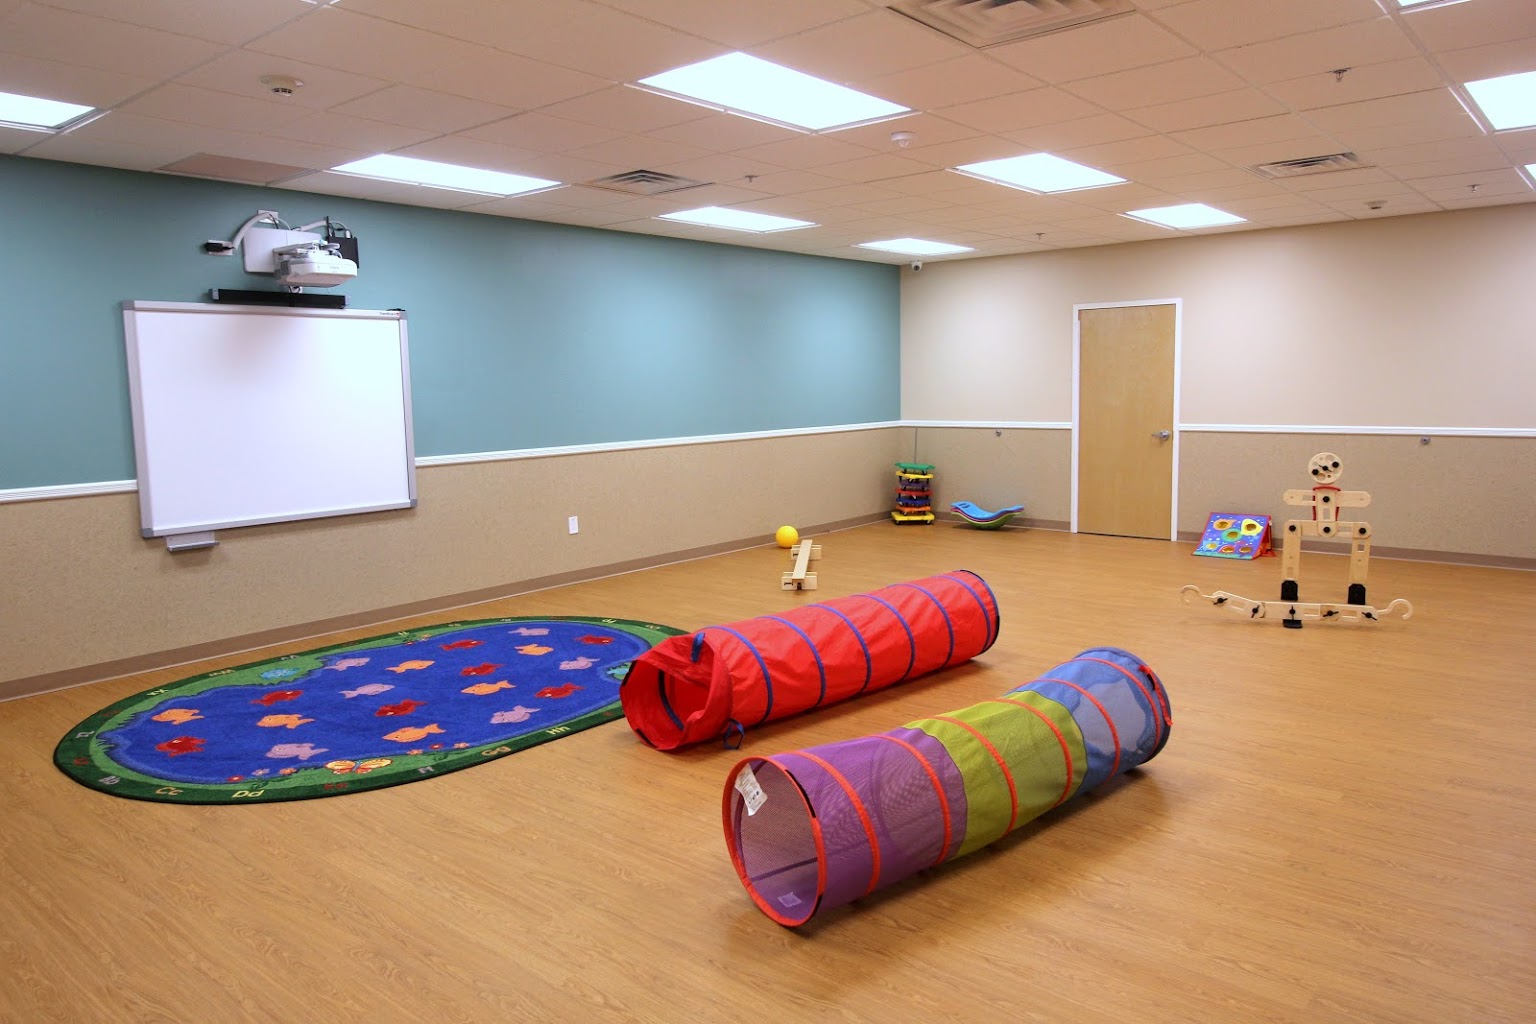 Lightbridge Academy Day Care Center in Millburn, NJ play area